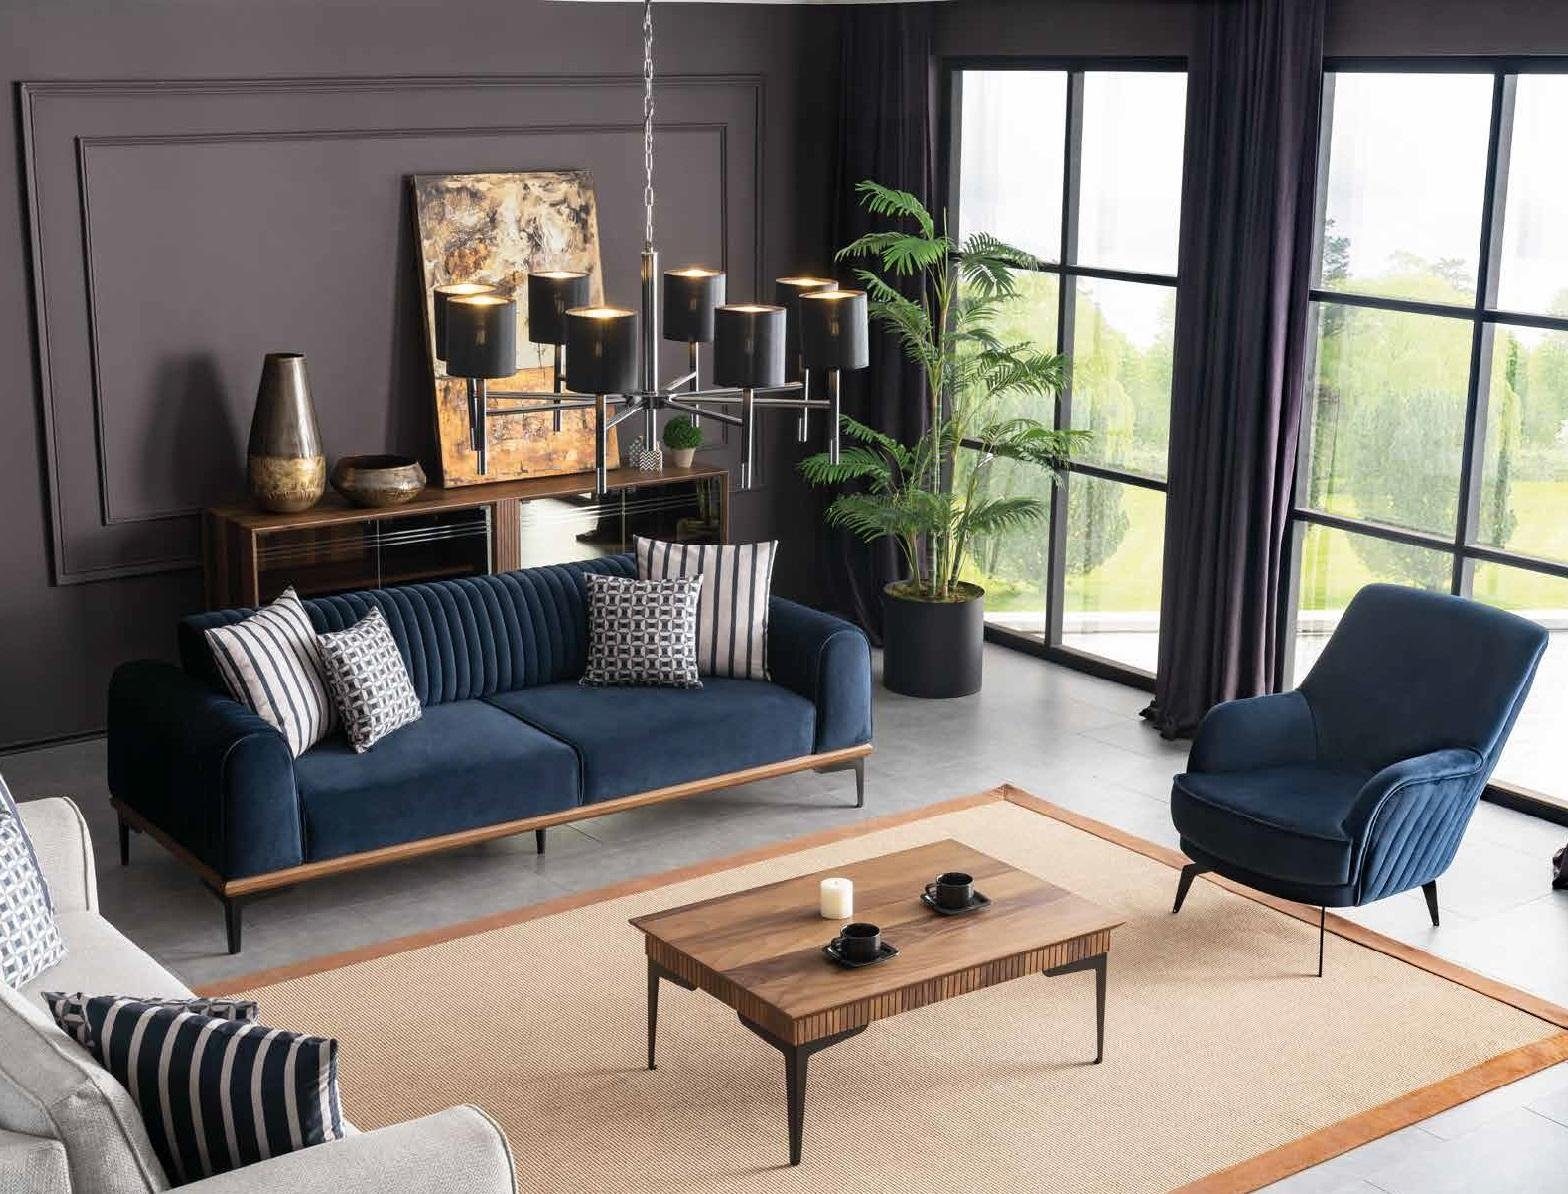 JVmoebel Sofa Wohnzimmer Sitzmöbel Europe Couch, Blauer in Dreisitzer Made Moderner Couch